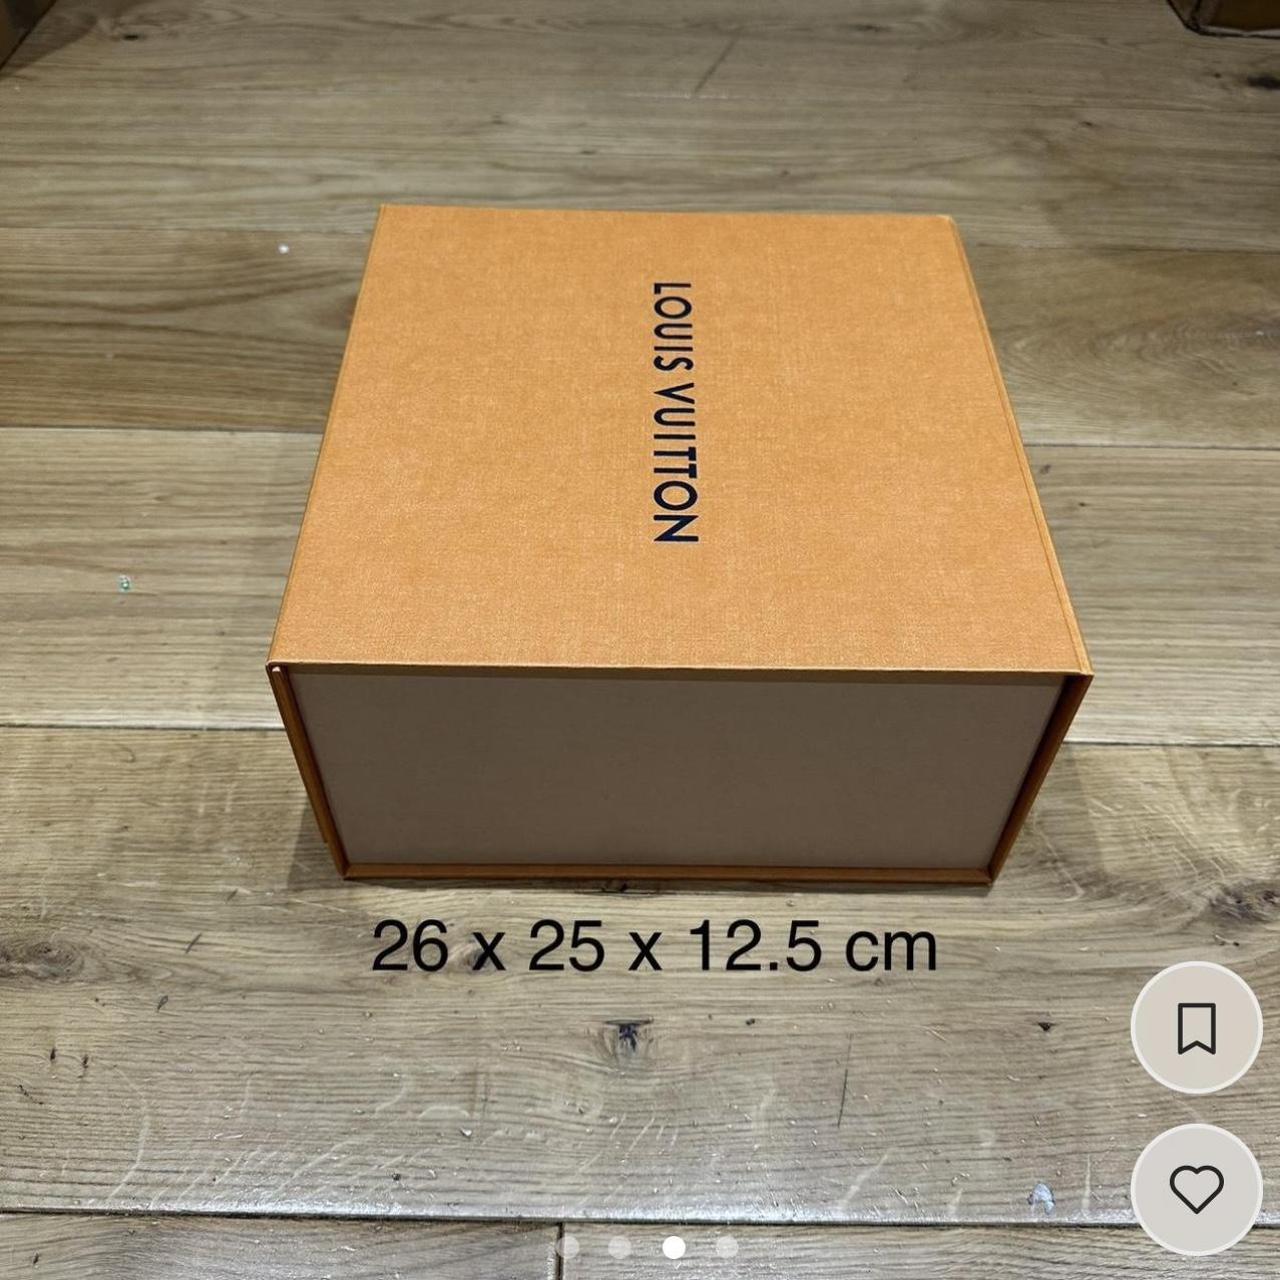 Authentic Louis Vuitton Magnetic Box Great - Depop